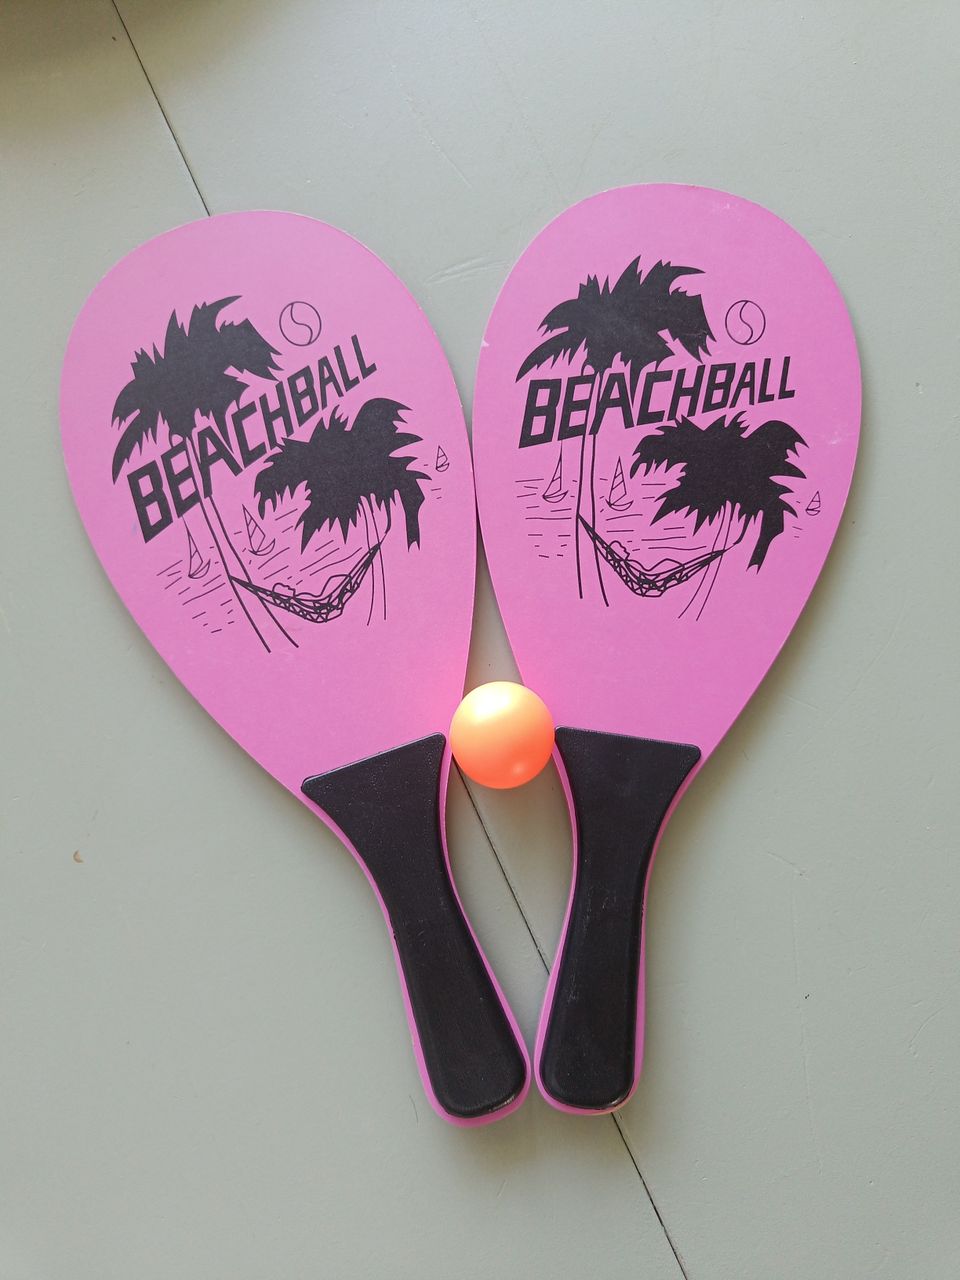 Beachball mailapeli